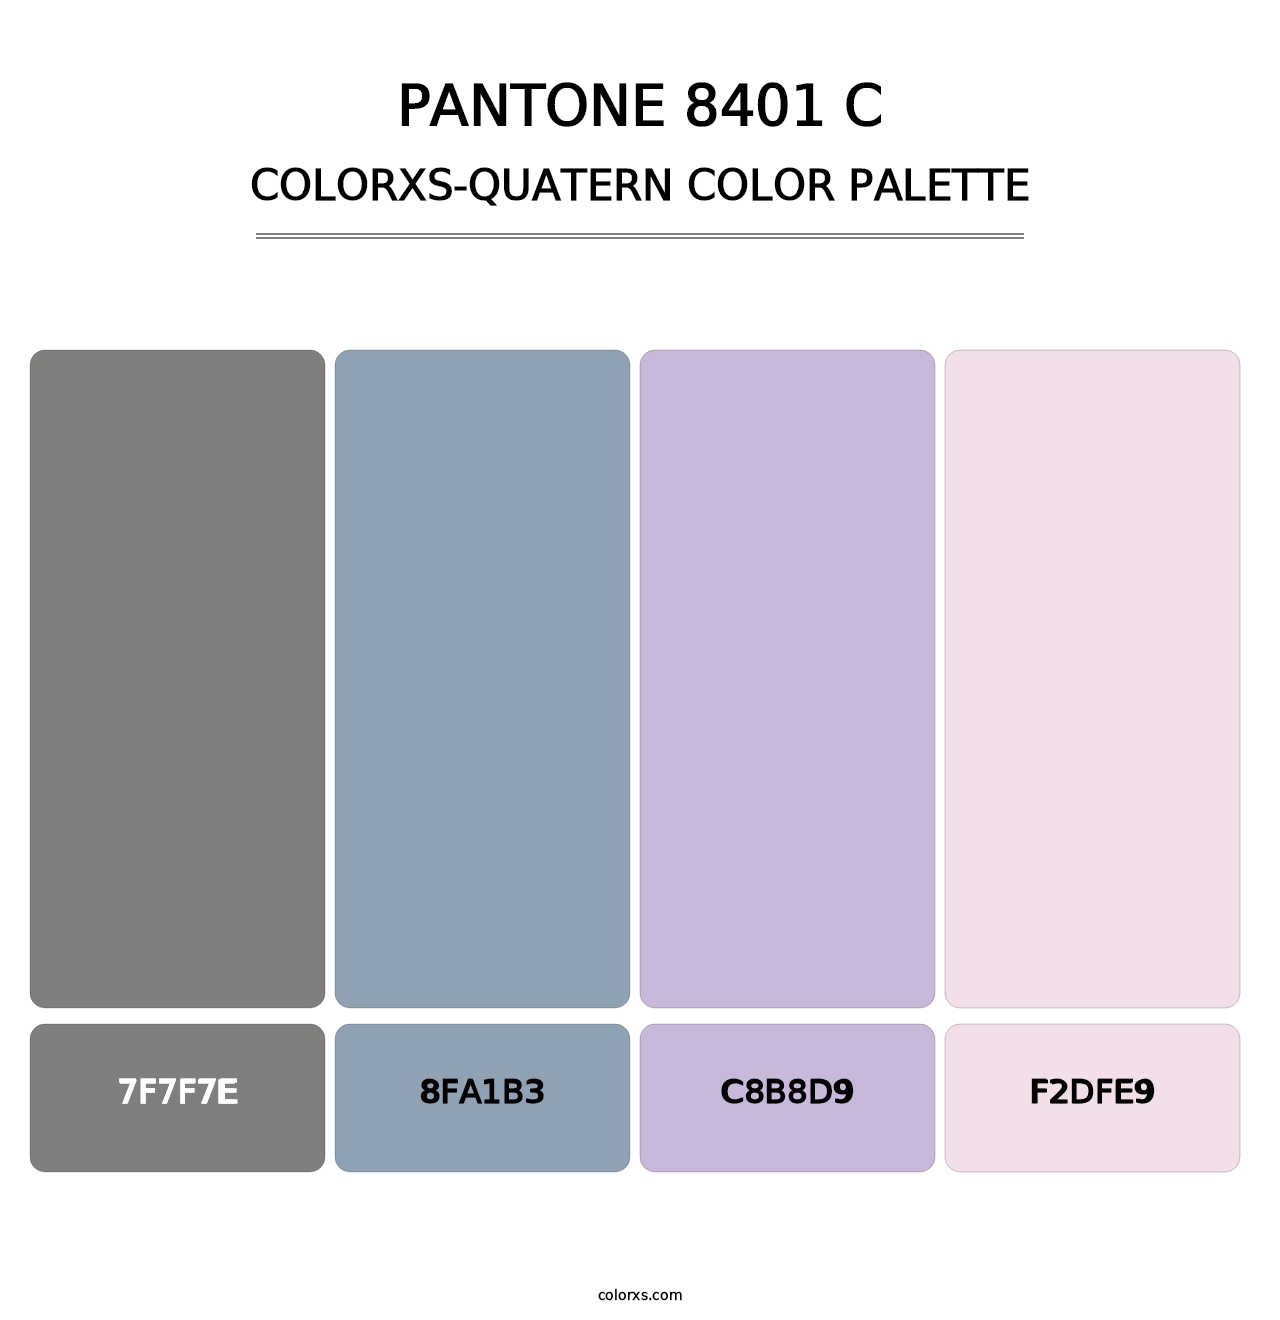 PANTONE 8401 C - Colorxs Quatern Palette